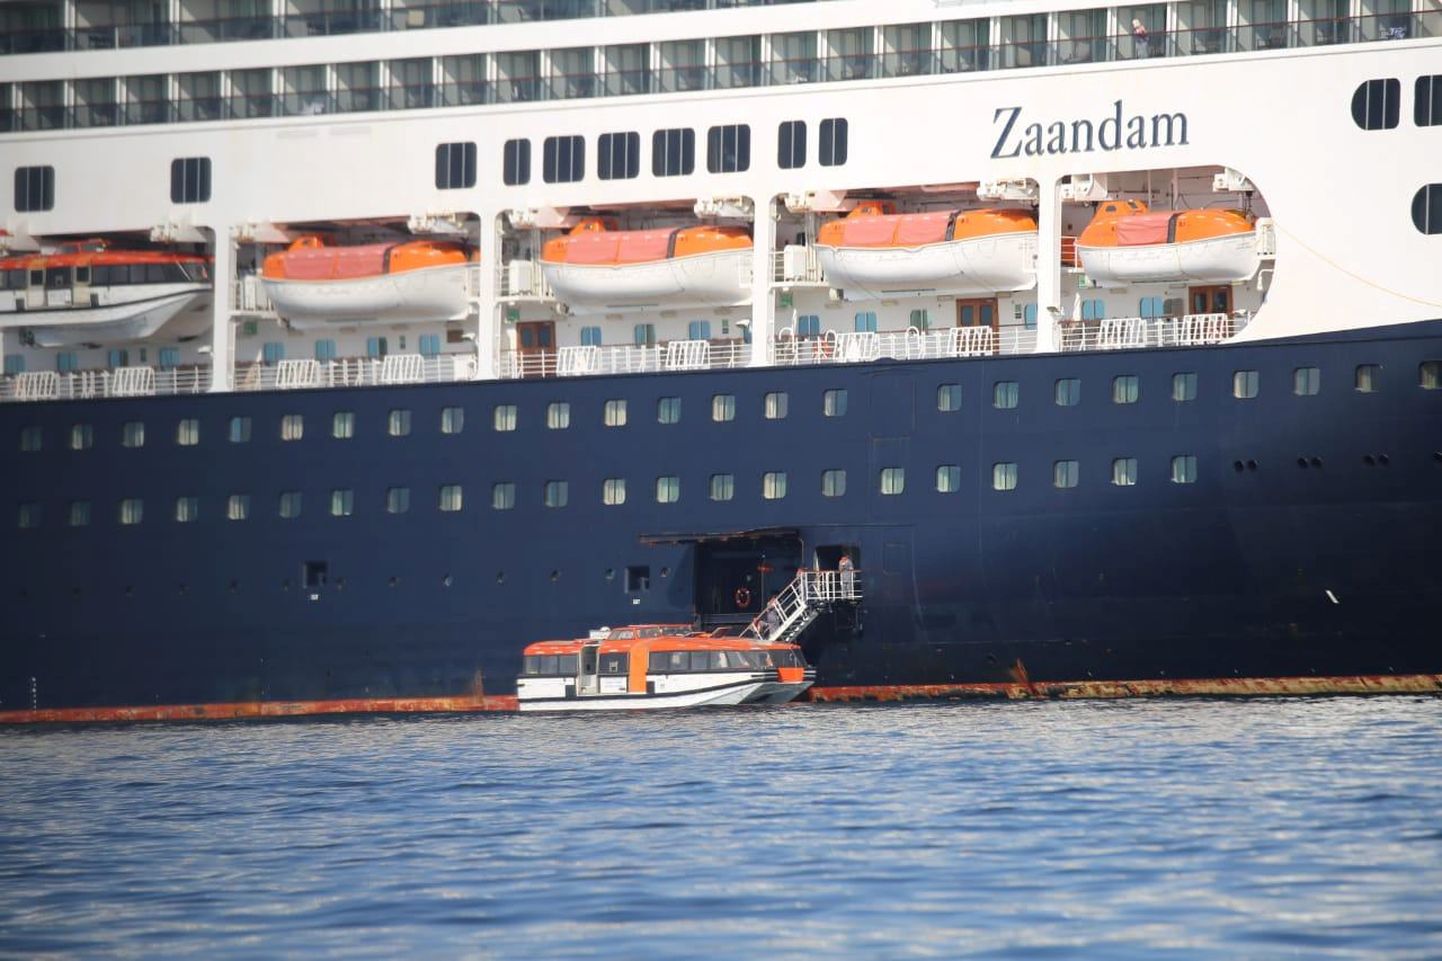 Holland America Line'i ristluslaeva MS Zaandam terveks tunnistatud reisijad paigutatakse Panama lahel ümber ettevõtte sõsarlaevale MS Rotterdam.